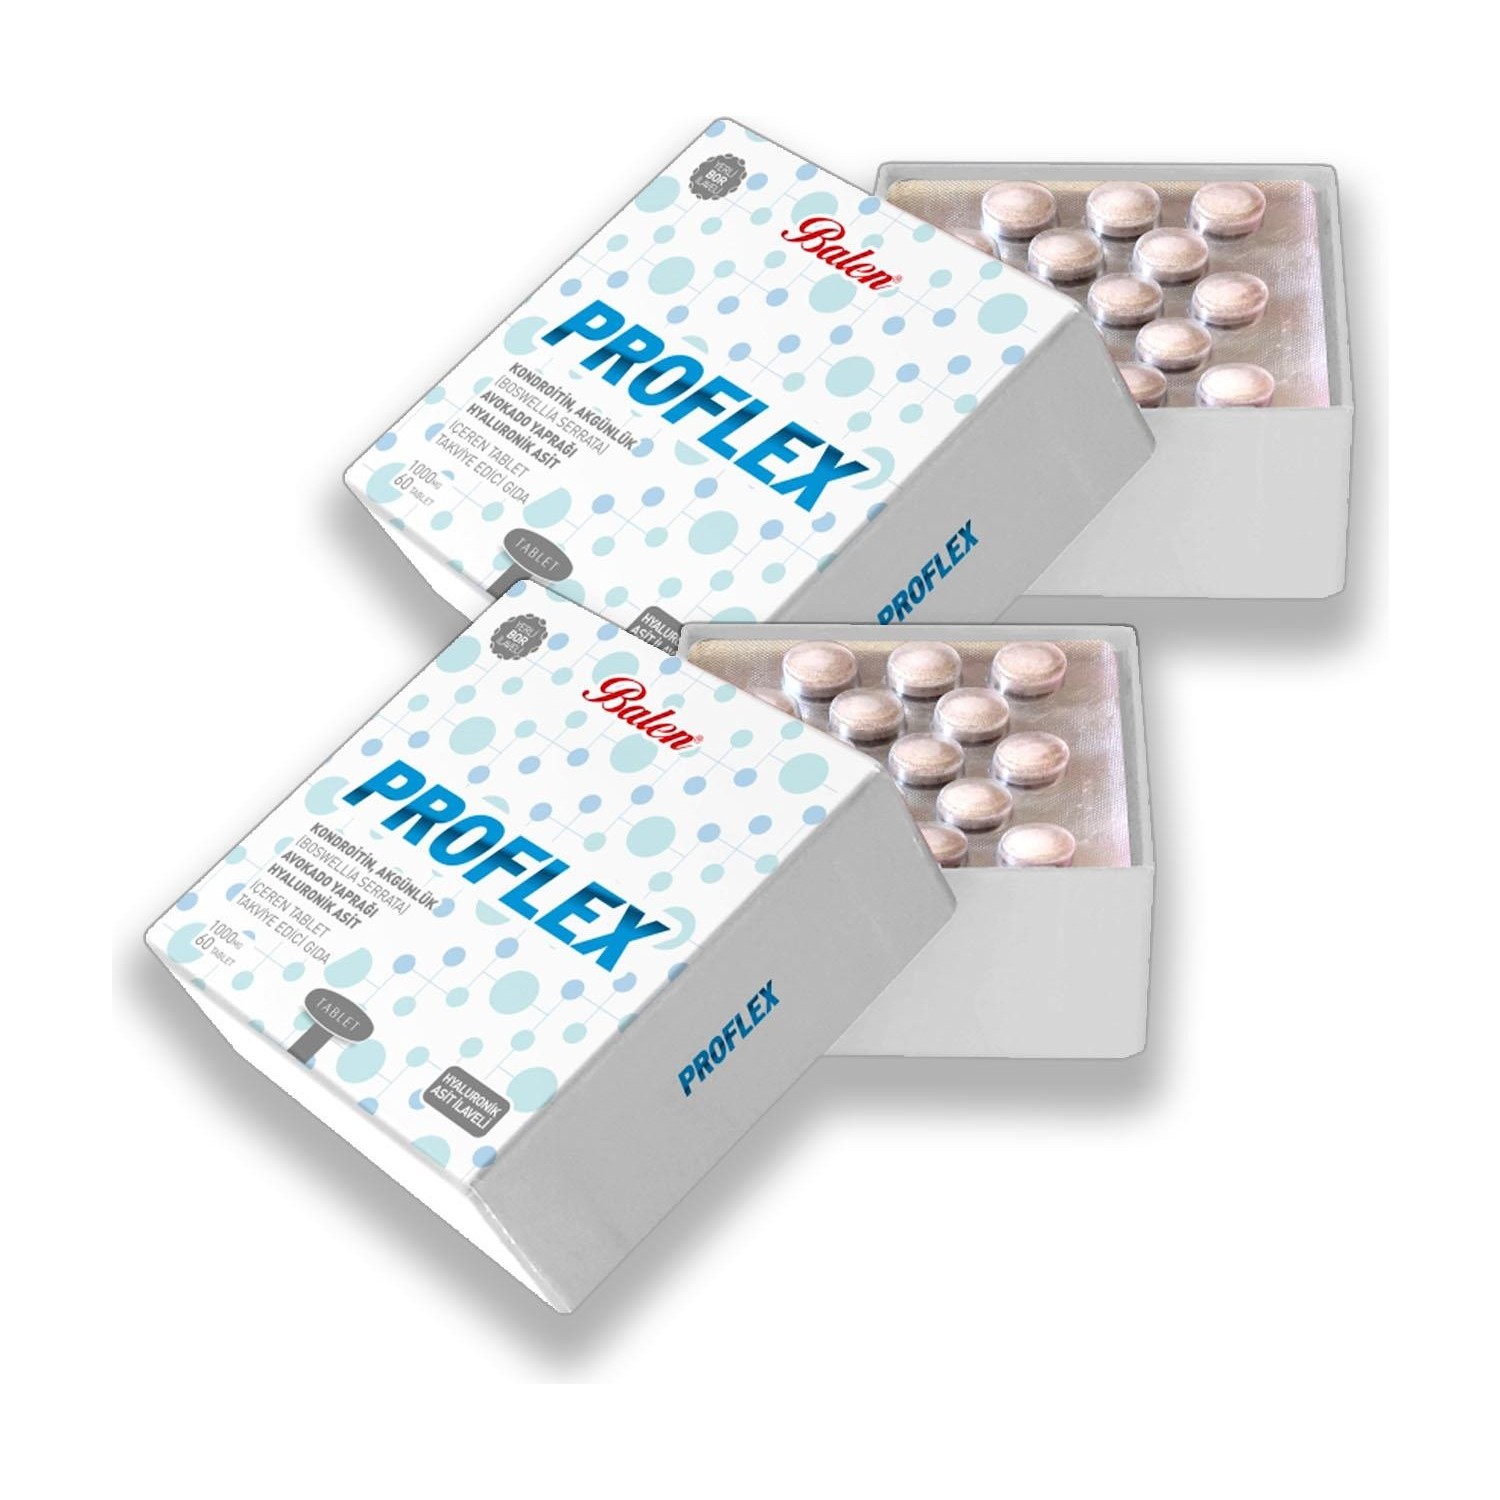 пищевая добавка balen promagic 1380 мг 2 упаковки по 60 таблеток Пищевая добавка Balen Proflex 1000 мг, 2 упаковки по 60 таблеток